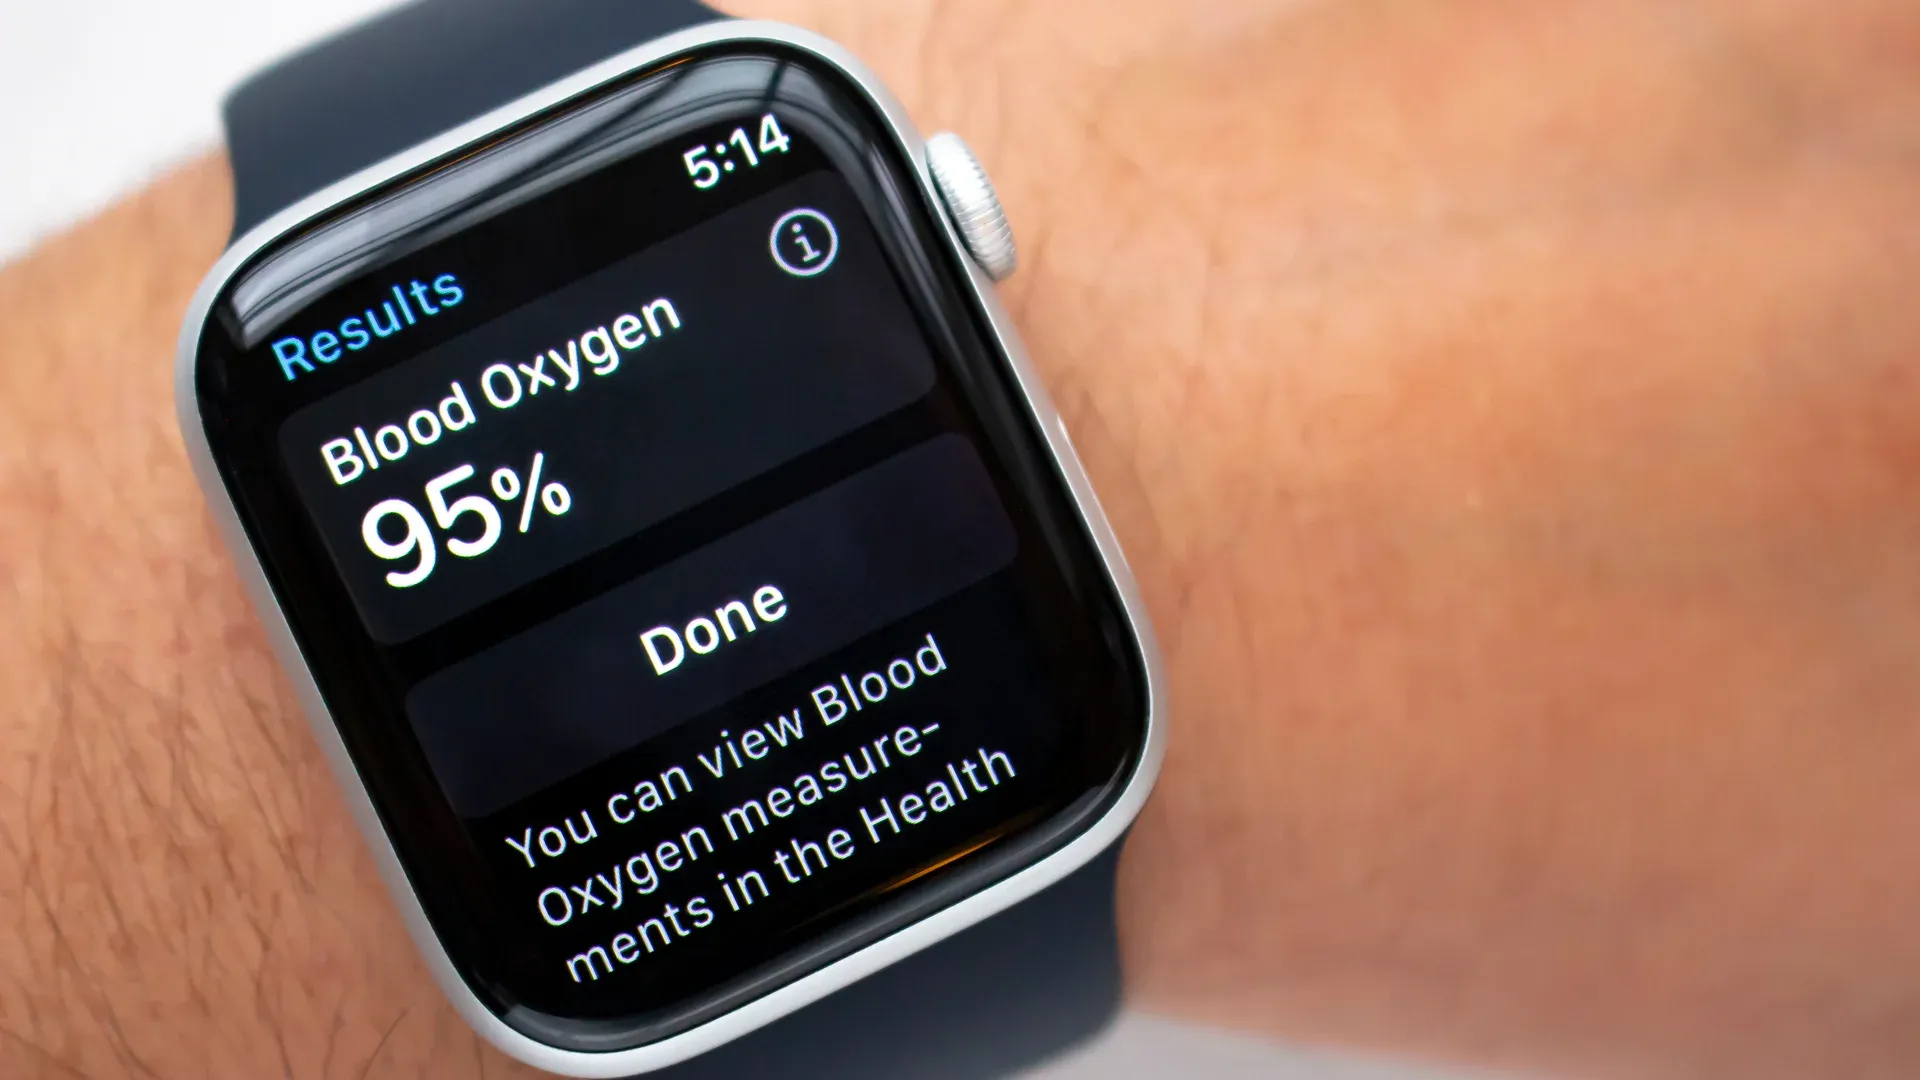 Foto do Apple Watch 6 com o recurso de monitoramento de oxigênio no sangue sendo executado